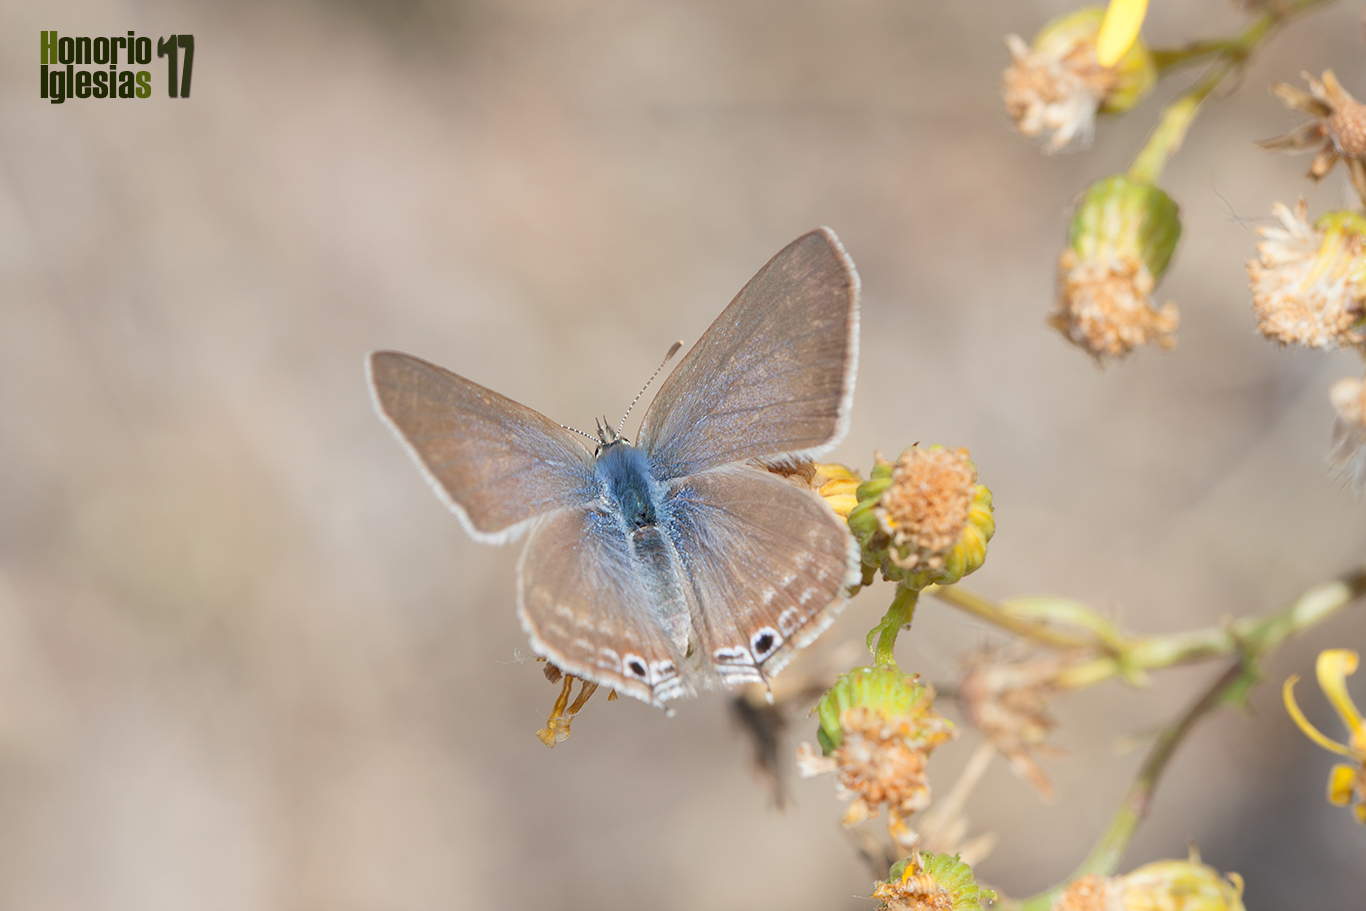 Ejemplar de mariposa estriada canela (Lampides boeticus) mostrando su anverso alar.